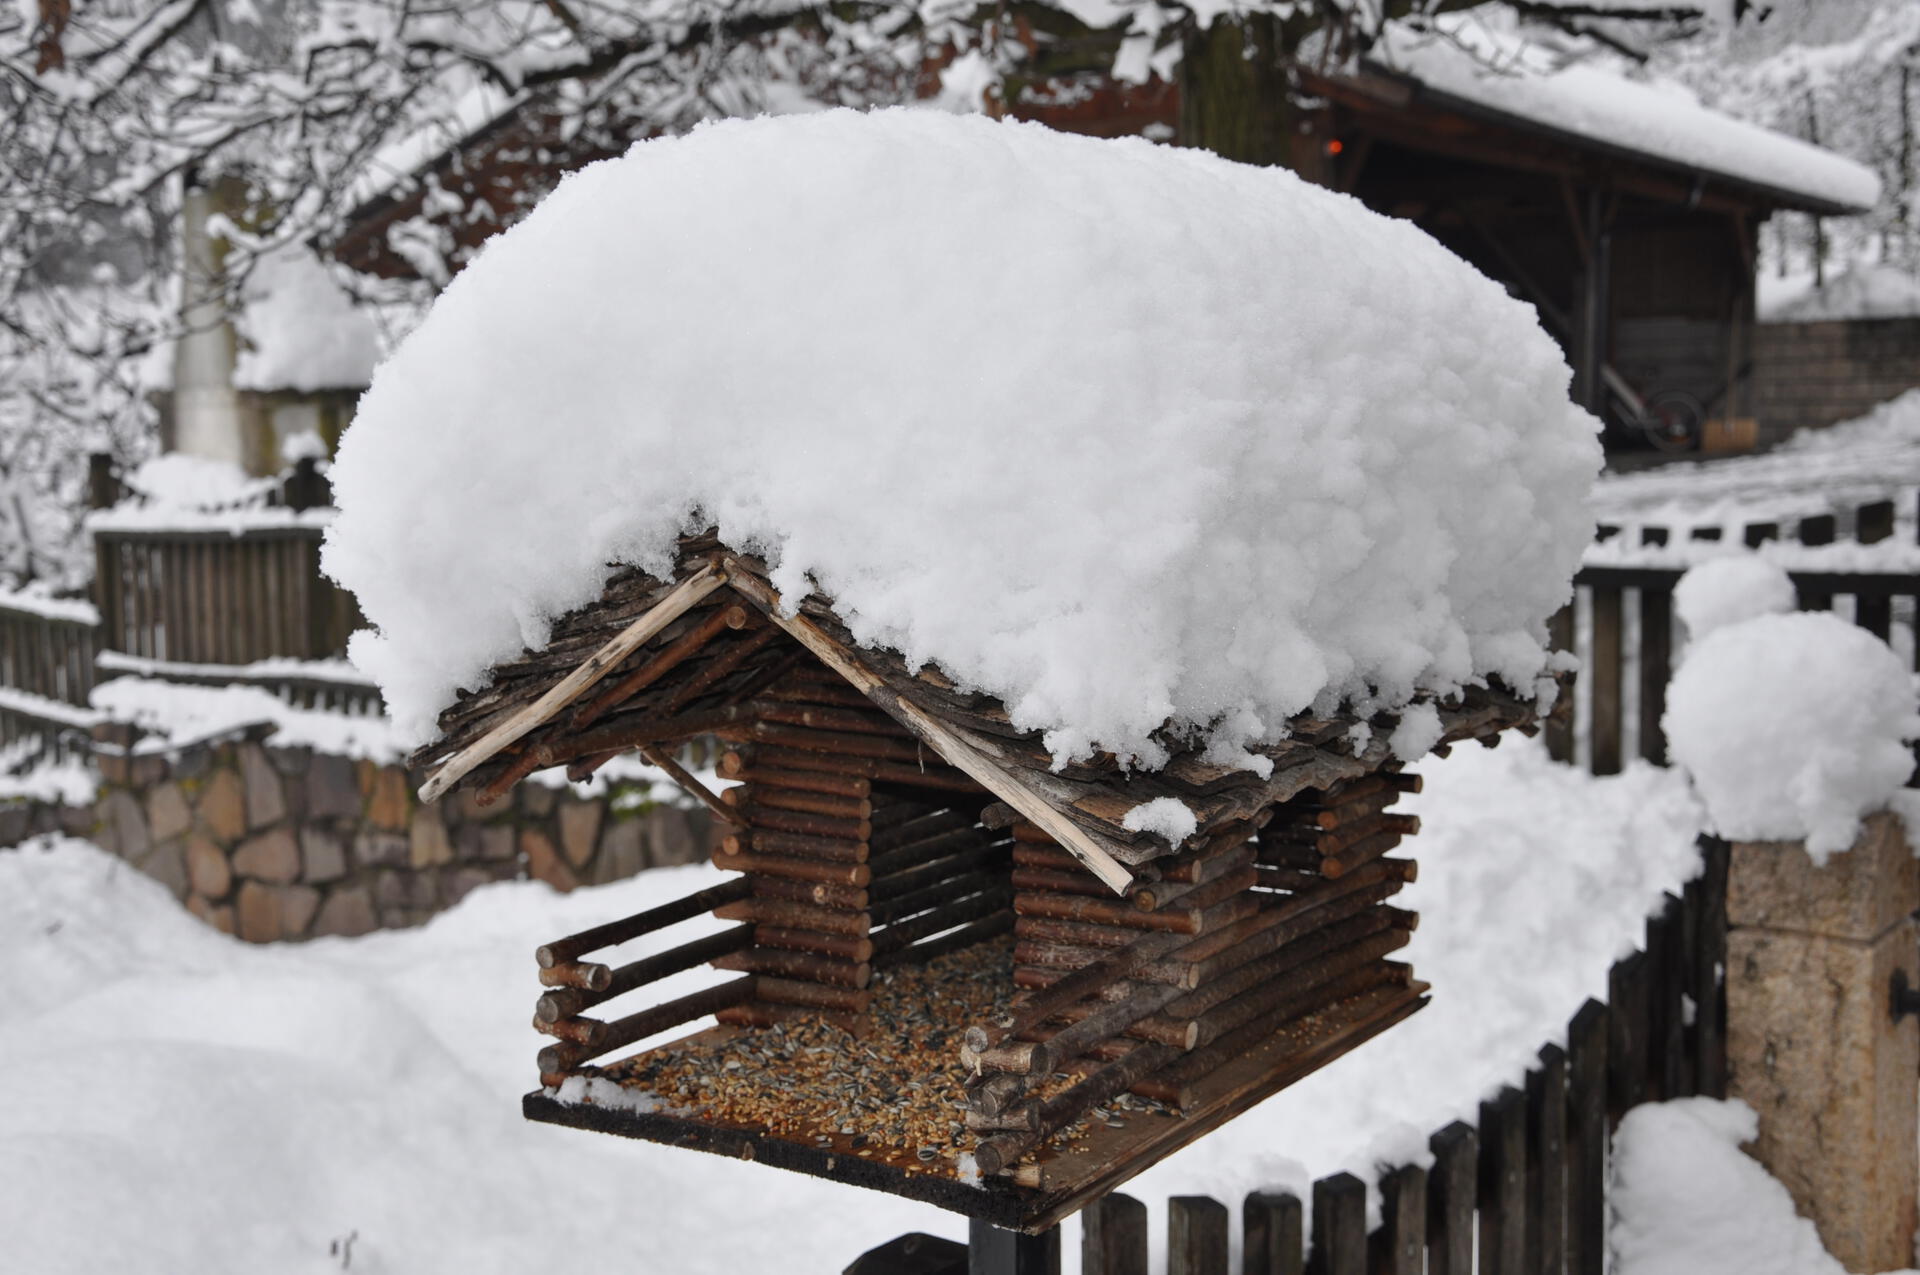 Snowy bird house